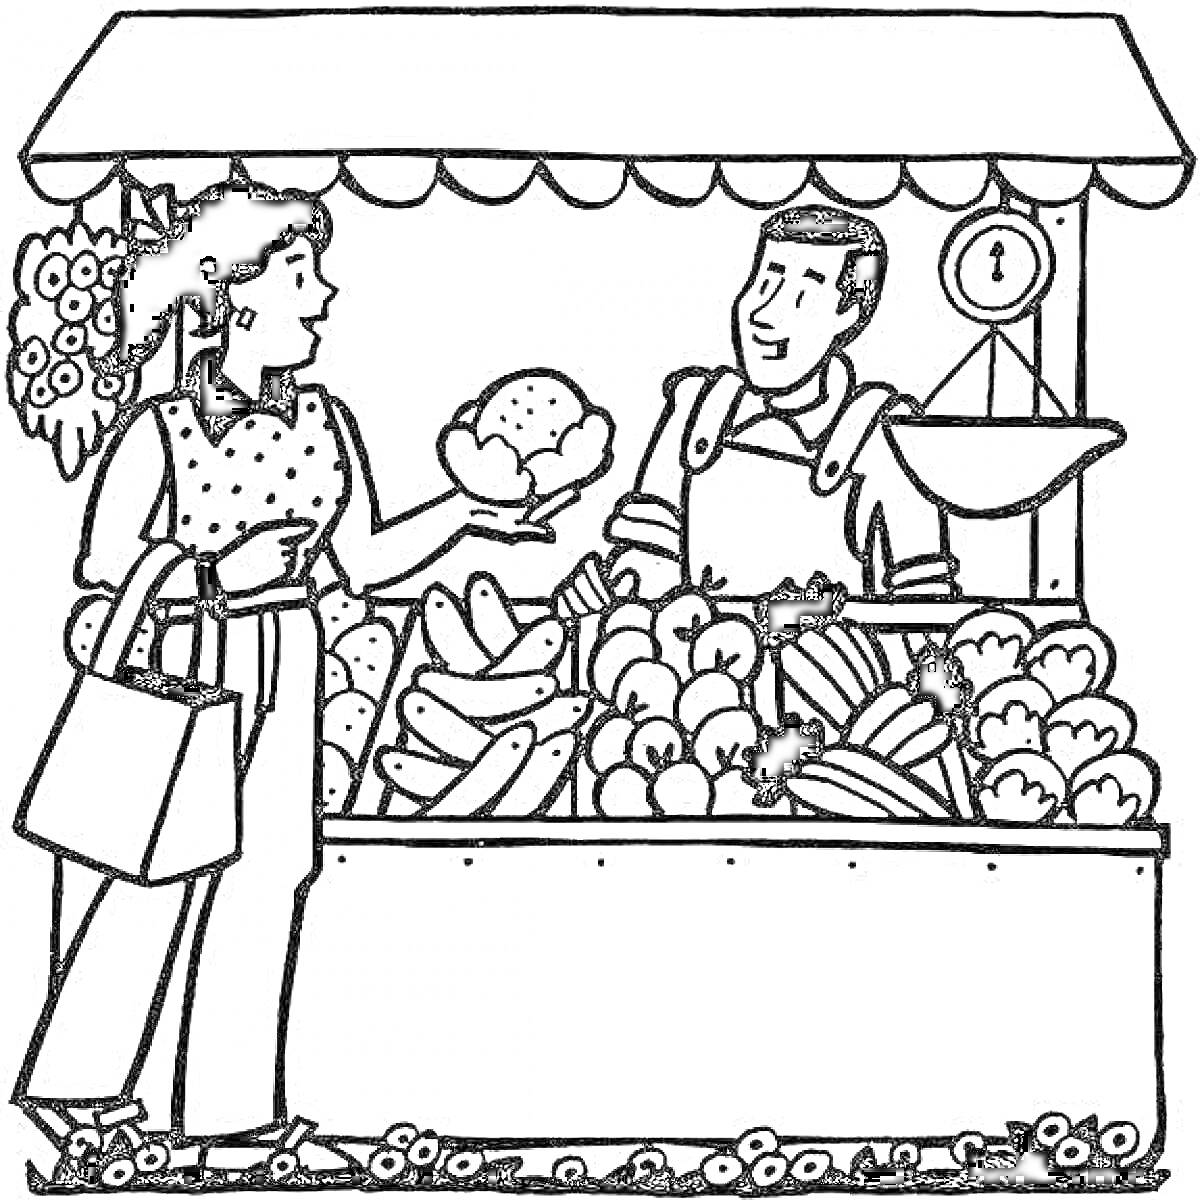 Покупка овощей на рынке, женщина выбирает цветную капусту, продавец стоит за стойкой с весами, на прилавке много различных овощей